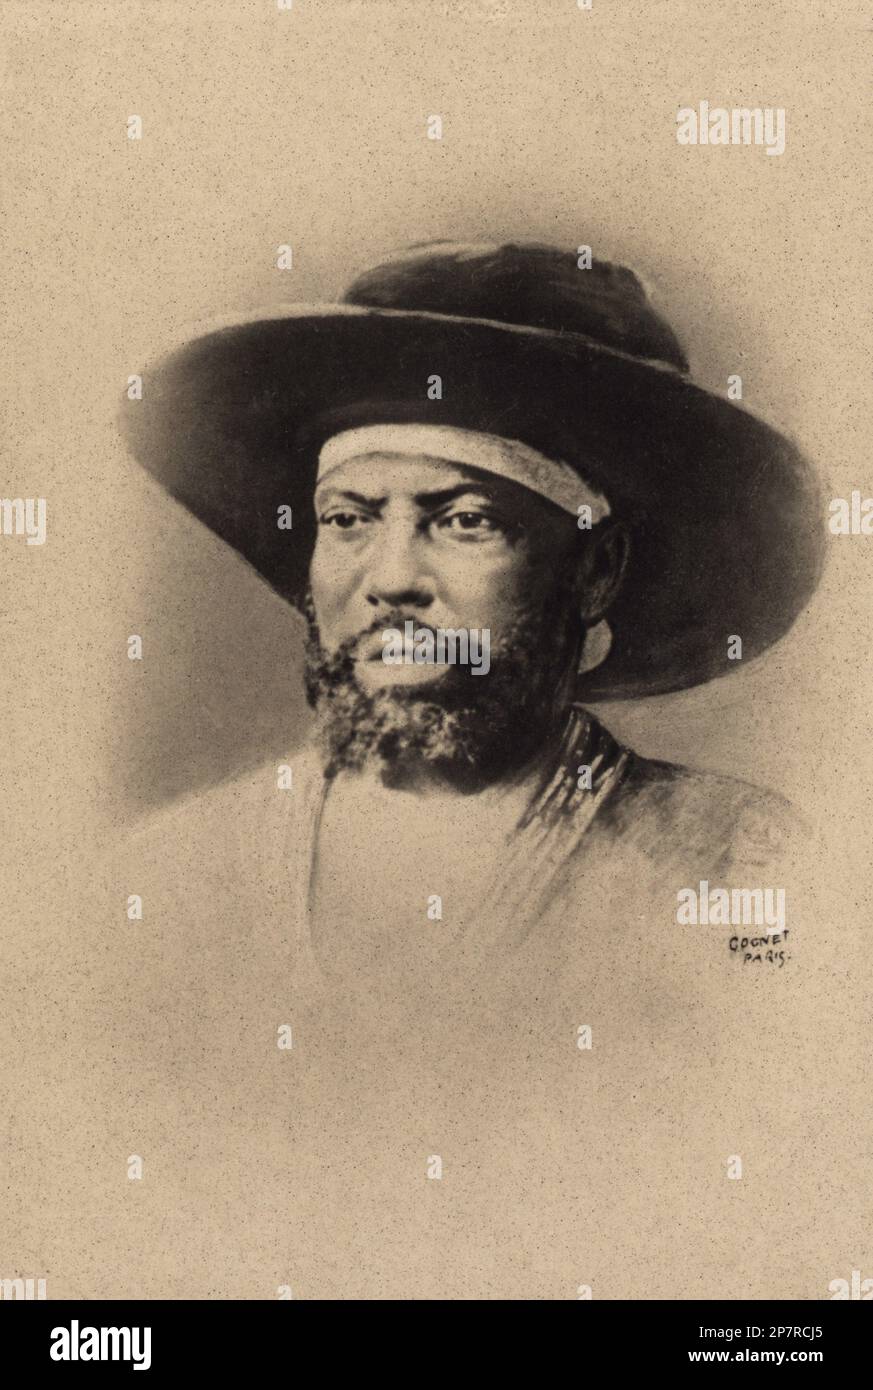 1895 CA : le Négus d'Erythrée l'empereur MENELIK II , baptisé Sahle Maryam ( 17 août 1844 – 12 décembre 1913 ), a été n?gusa nagast de l'Ethiopie de 1889 à sa mort . Photo de Cognet , Paris - MENELIK Imperatore dell' ABISSINIA - dirigeants de Shewa- ETIOPIA - POLICO - POLITICA - POLITIC - STATISTA - foto storiche - foto storica - portrait - ritratto - dirigeants de Shewa - barbe - barba - COLONIE ITALIANE - COLONIALISMO - ABISIA- sappello - ABISIA- Archivio GBB Banque D'Images